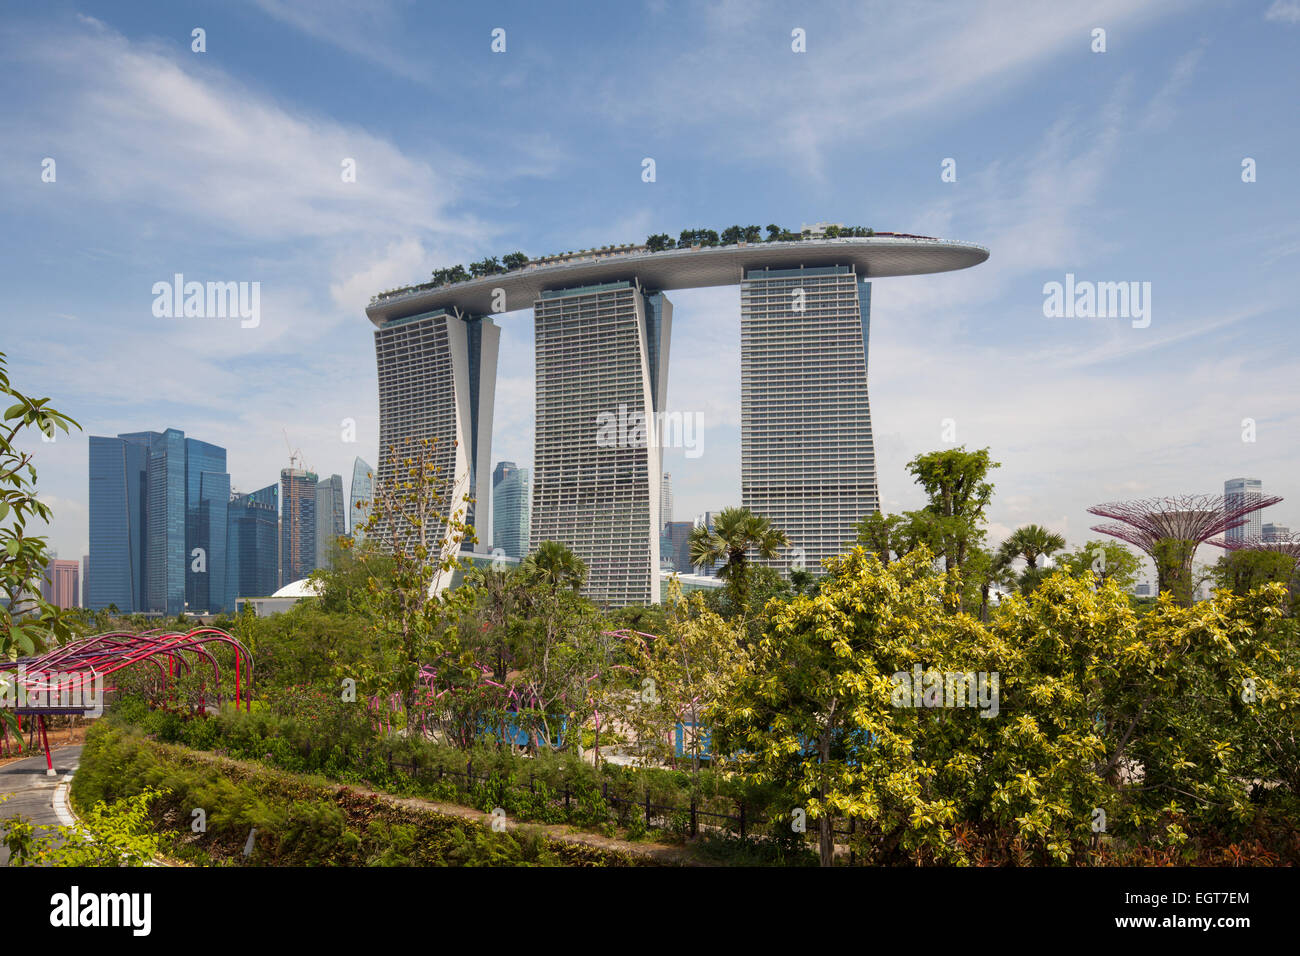 Vista di Marina Bay sands hotel e casino da giardini dalla Baia di Singapore. Foto Stock